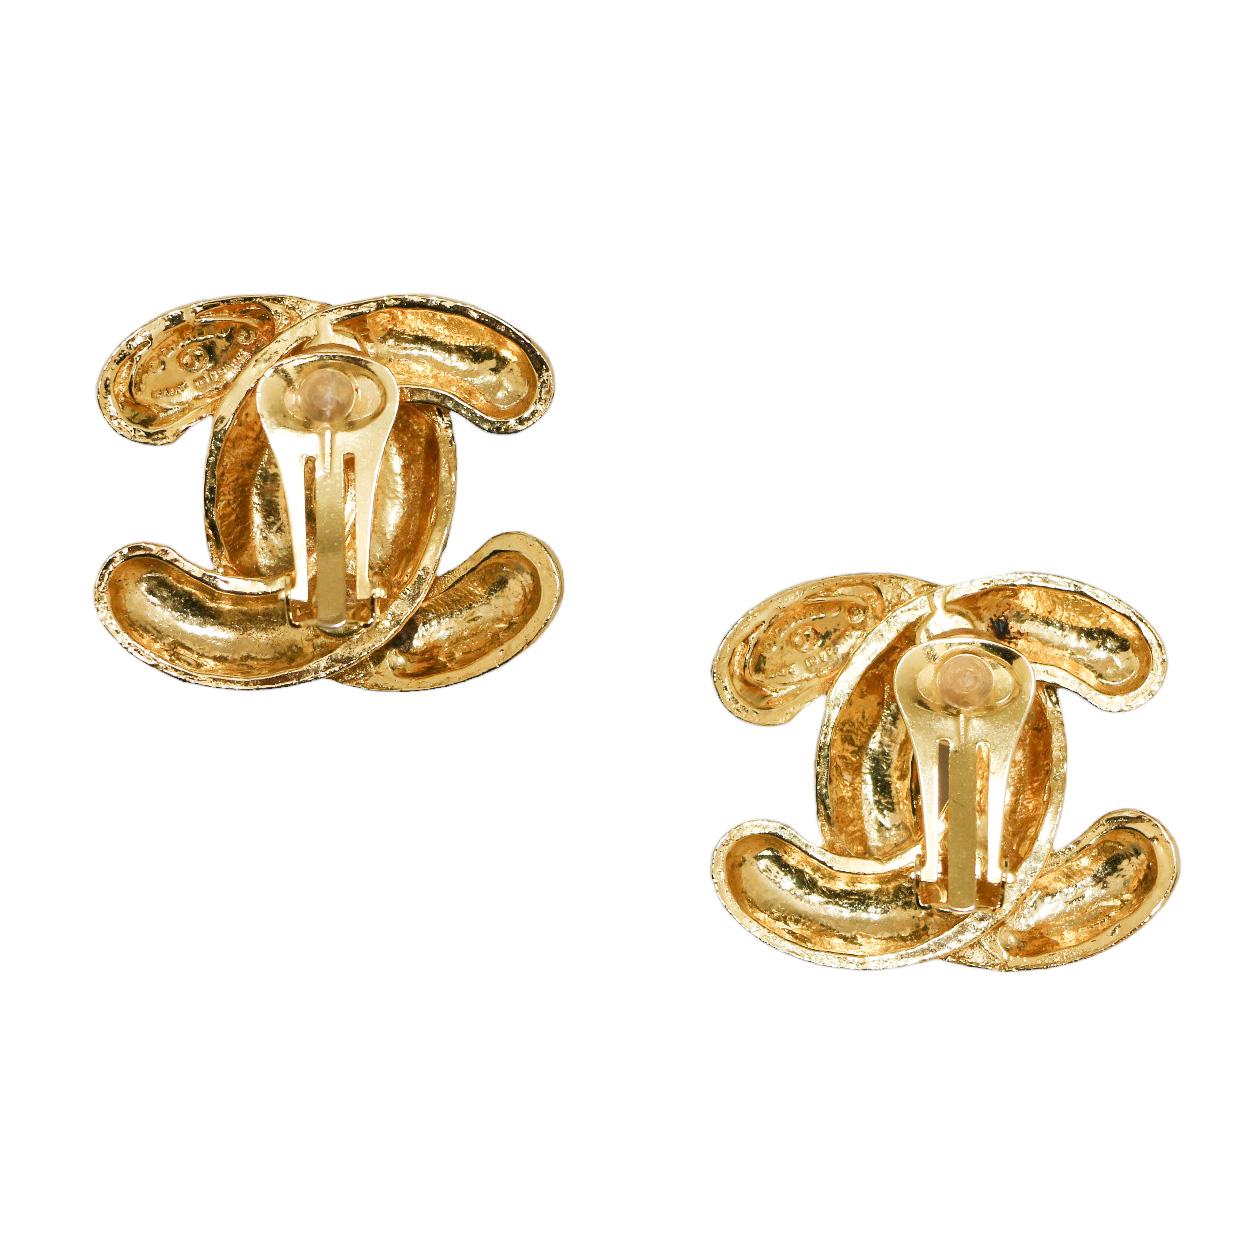 Schöne gesteppte Clip-ons von Chanel im Vintage-Stil
Condit : ausgezeichnet
Hergestellt in Frankreich
MATERIAL : vergoldetes Metall
Farbe : golden
Abmessungen: 4,3 x 3 cm
Stempel : ja
Jahr: 1990-1992
Details : wunderschöne gesteppte Ohrringe mit